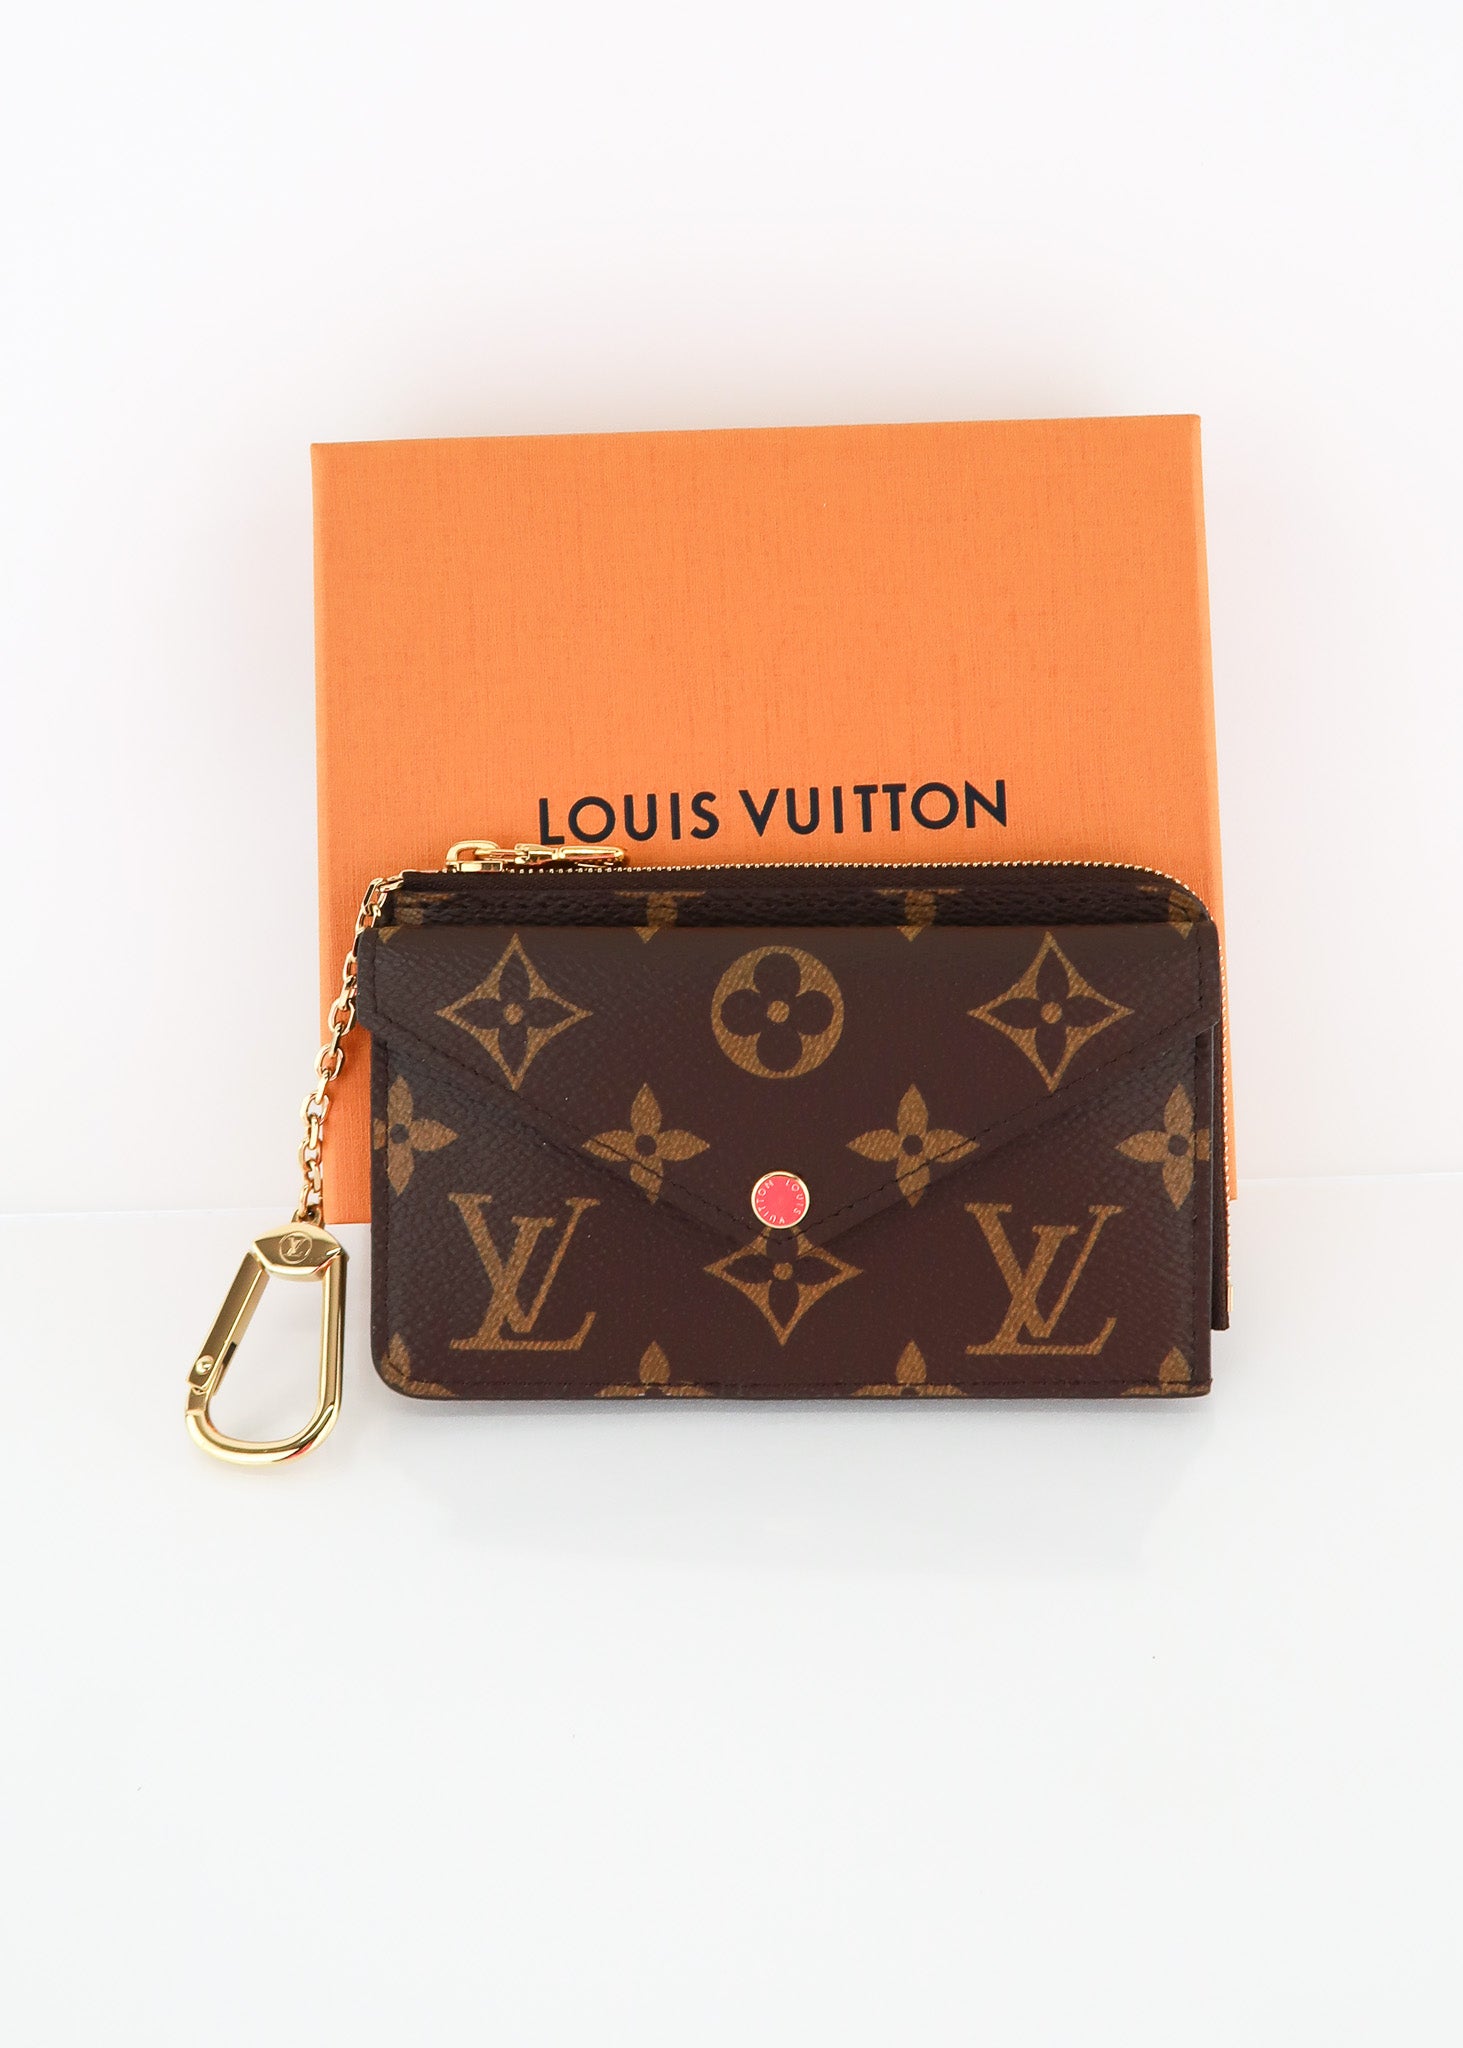 Louis Vuitton Monogram Recto Verso – DAC